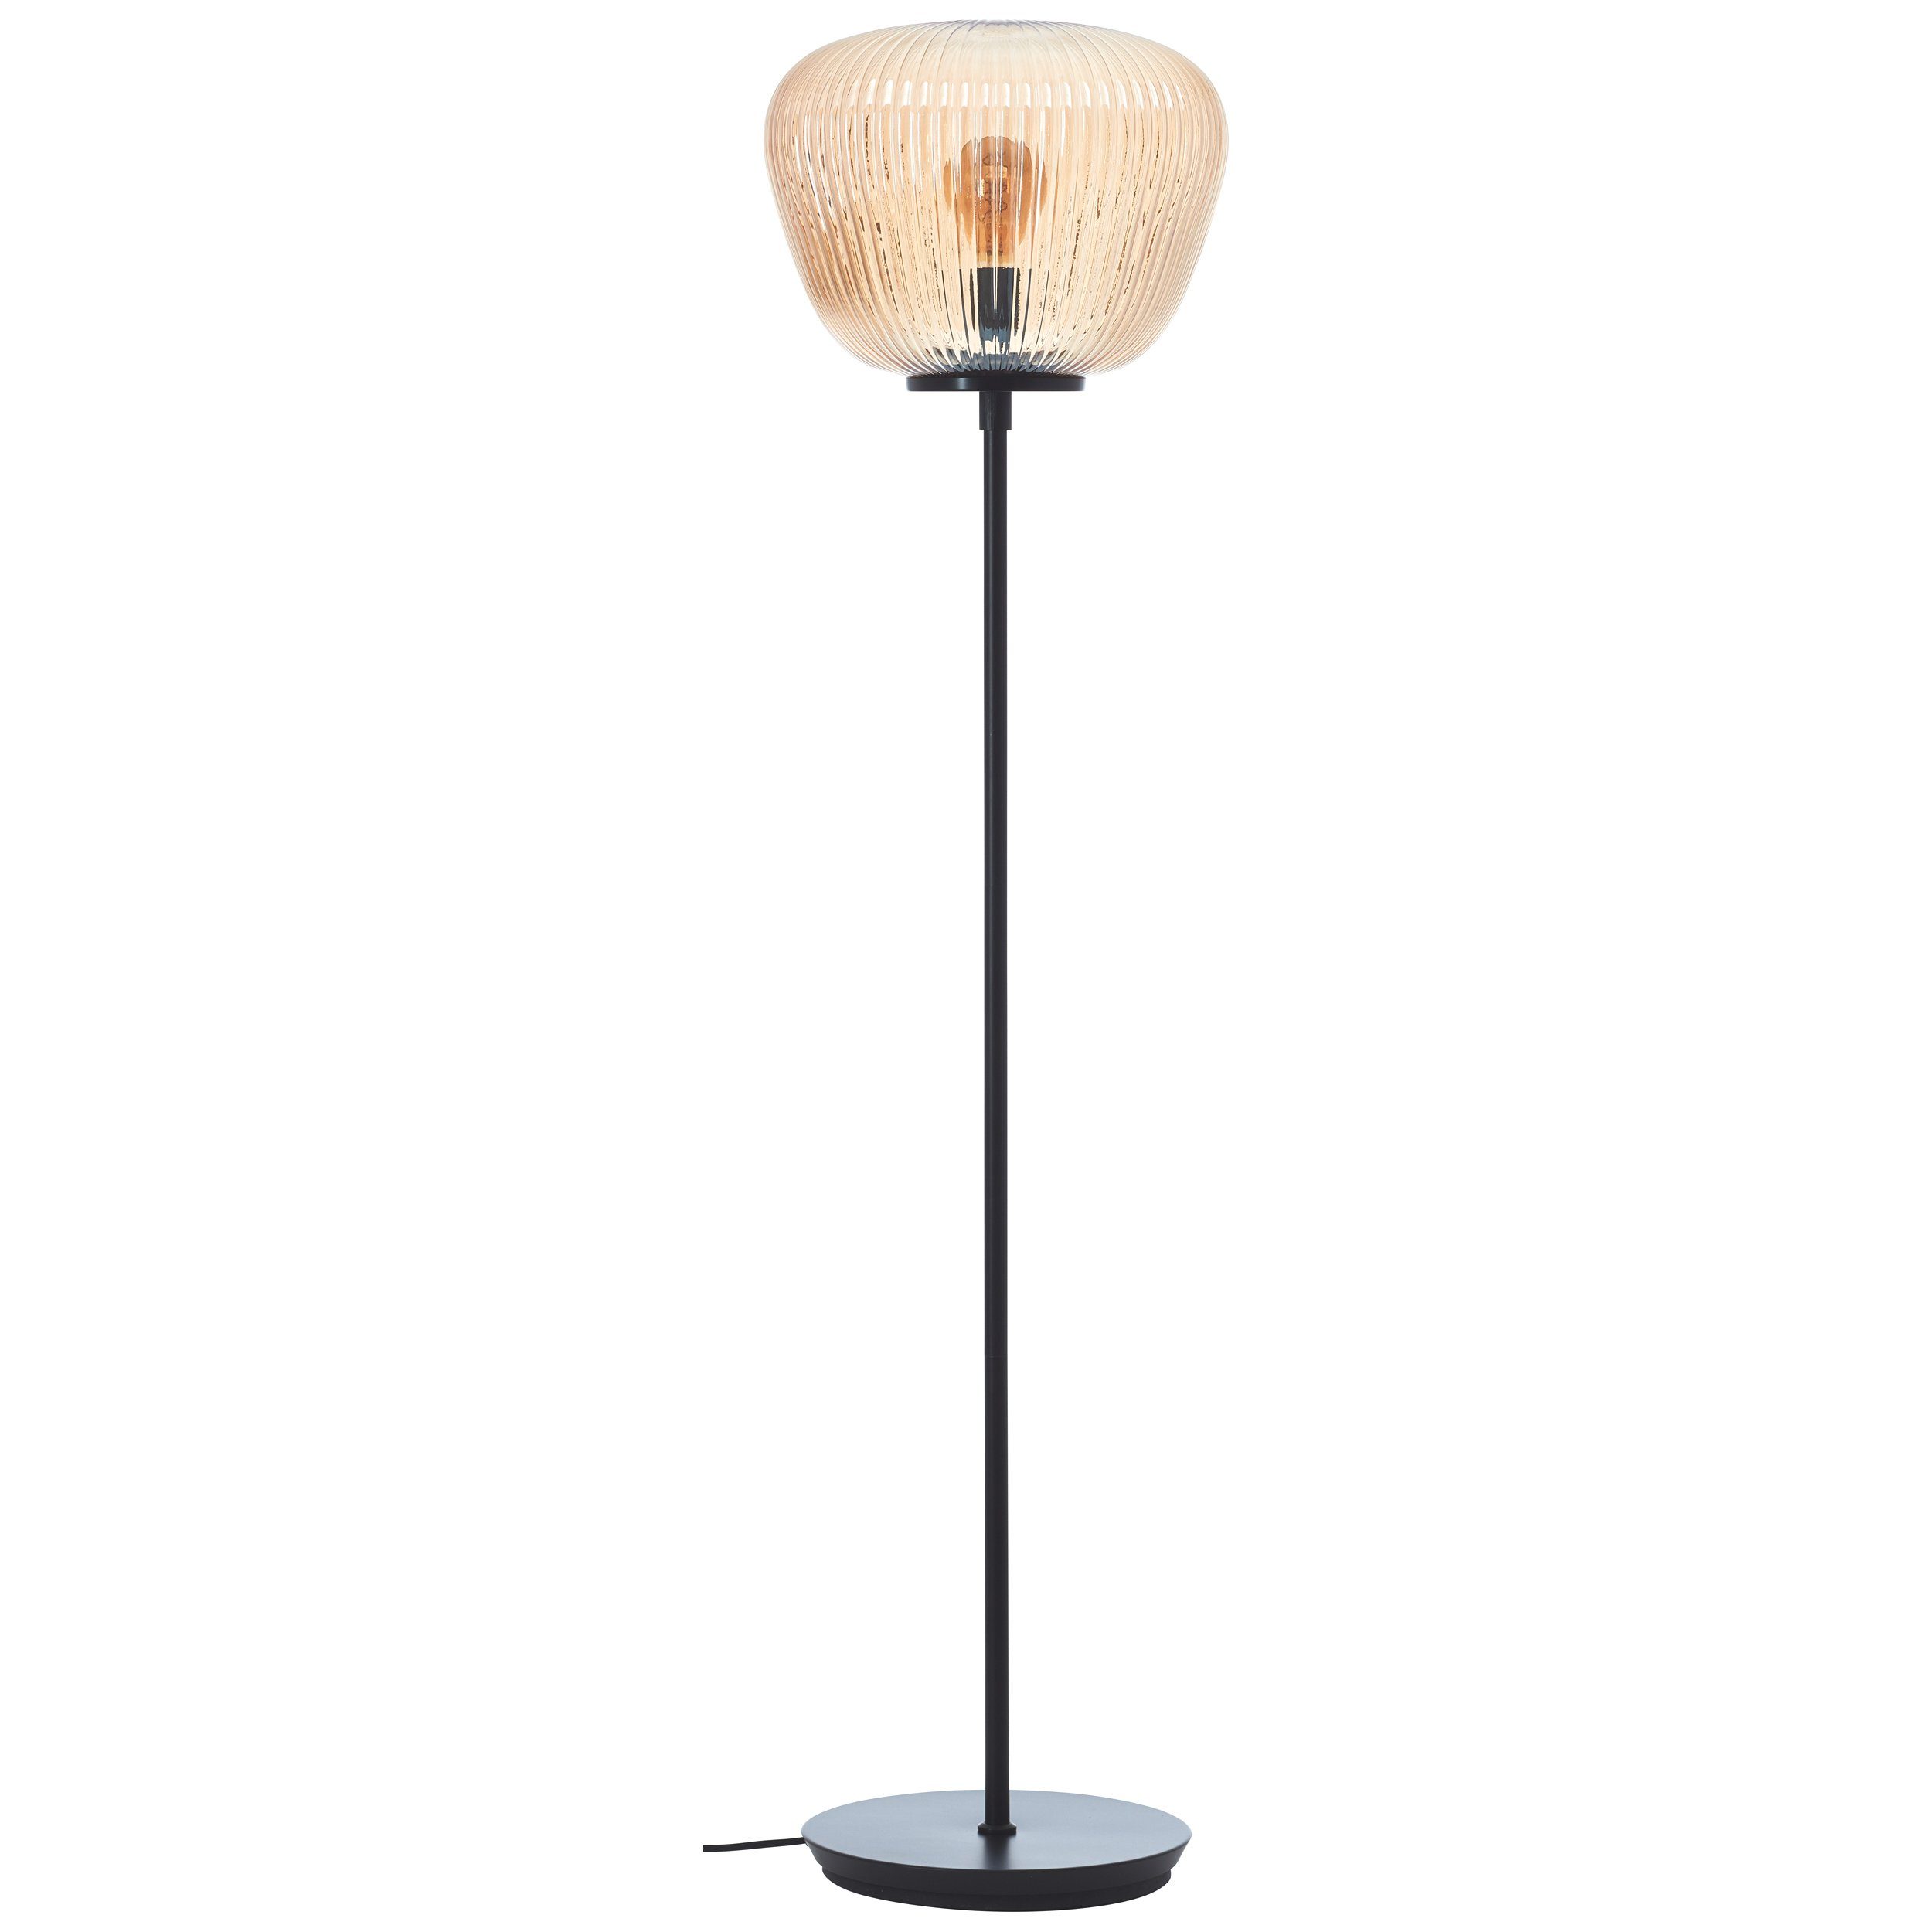 Lightbox Stehlampe, ohne Leuchtmittel, Stehlampe, 35 cm, Amber-Bernsteinfarben x Riffelglas, E27, 140